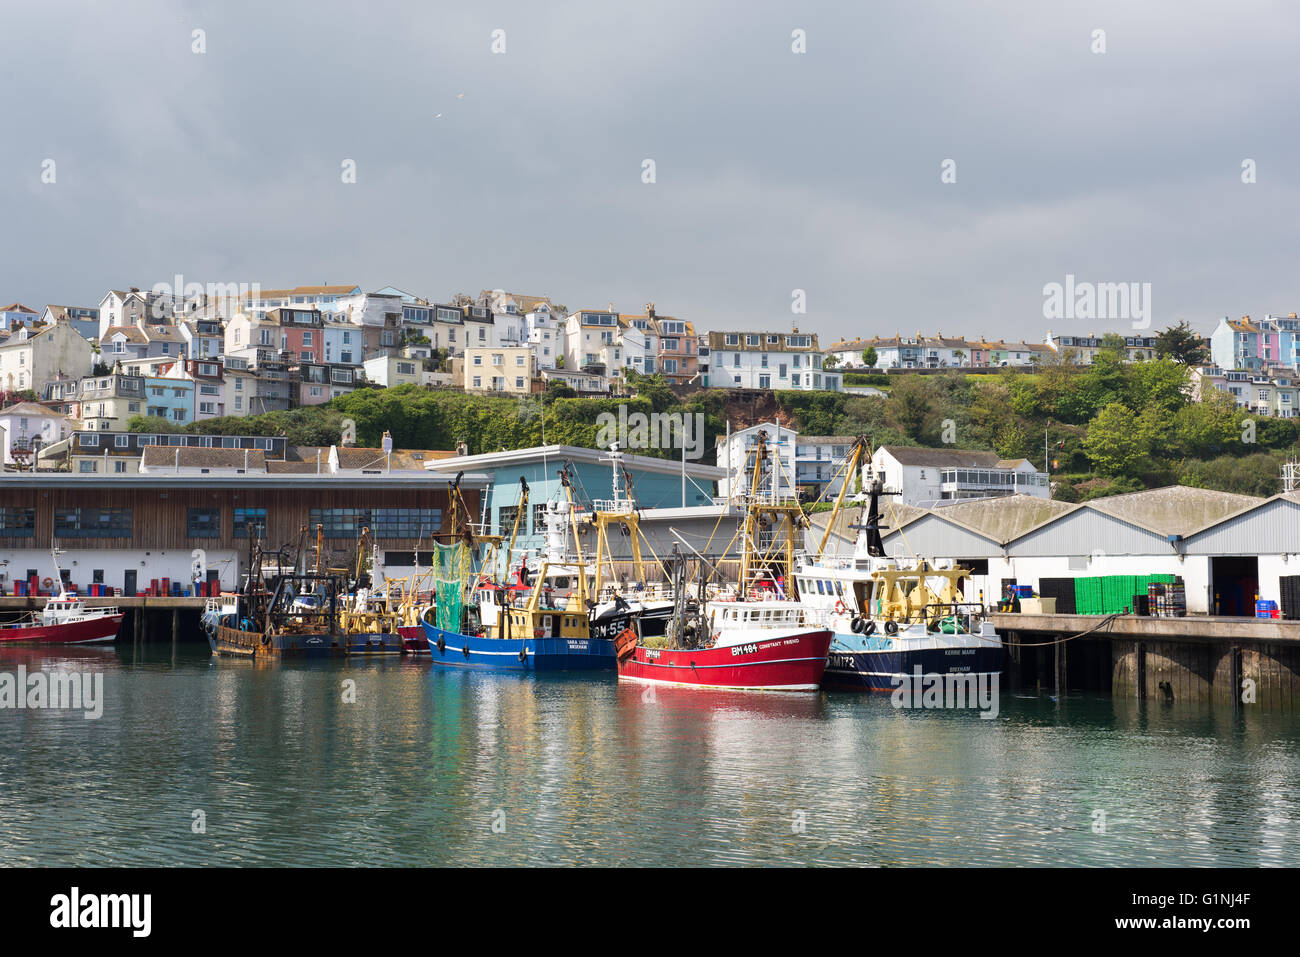 Les bateaux de pêche et chalutiers du port à côté, Brixham, Devon, UK. Banque D'Images